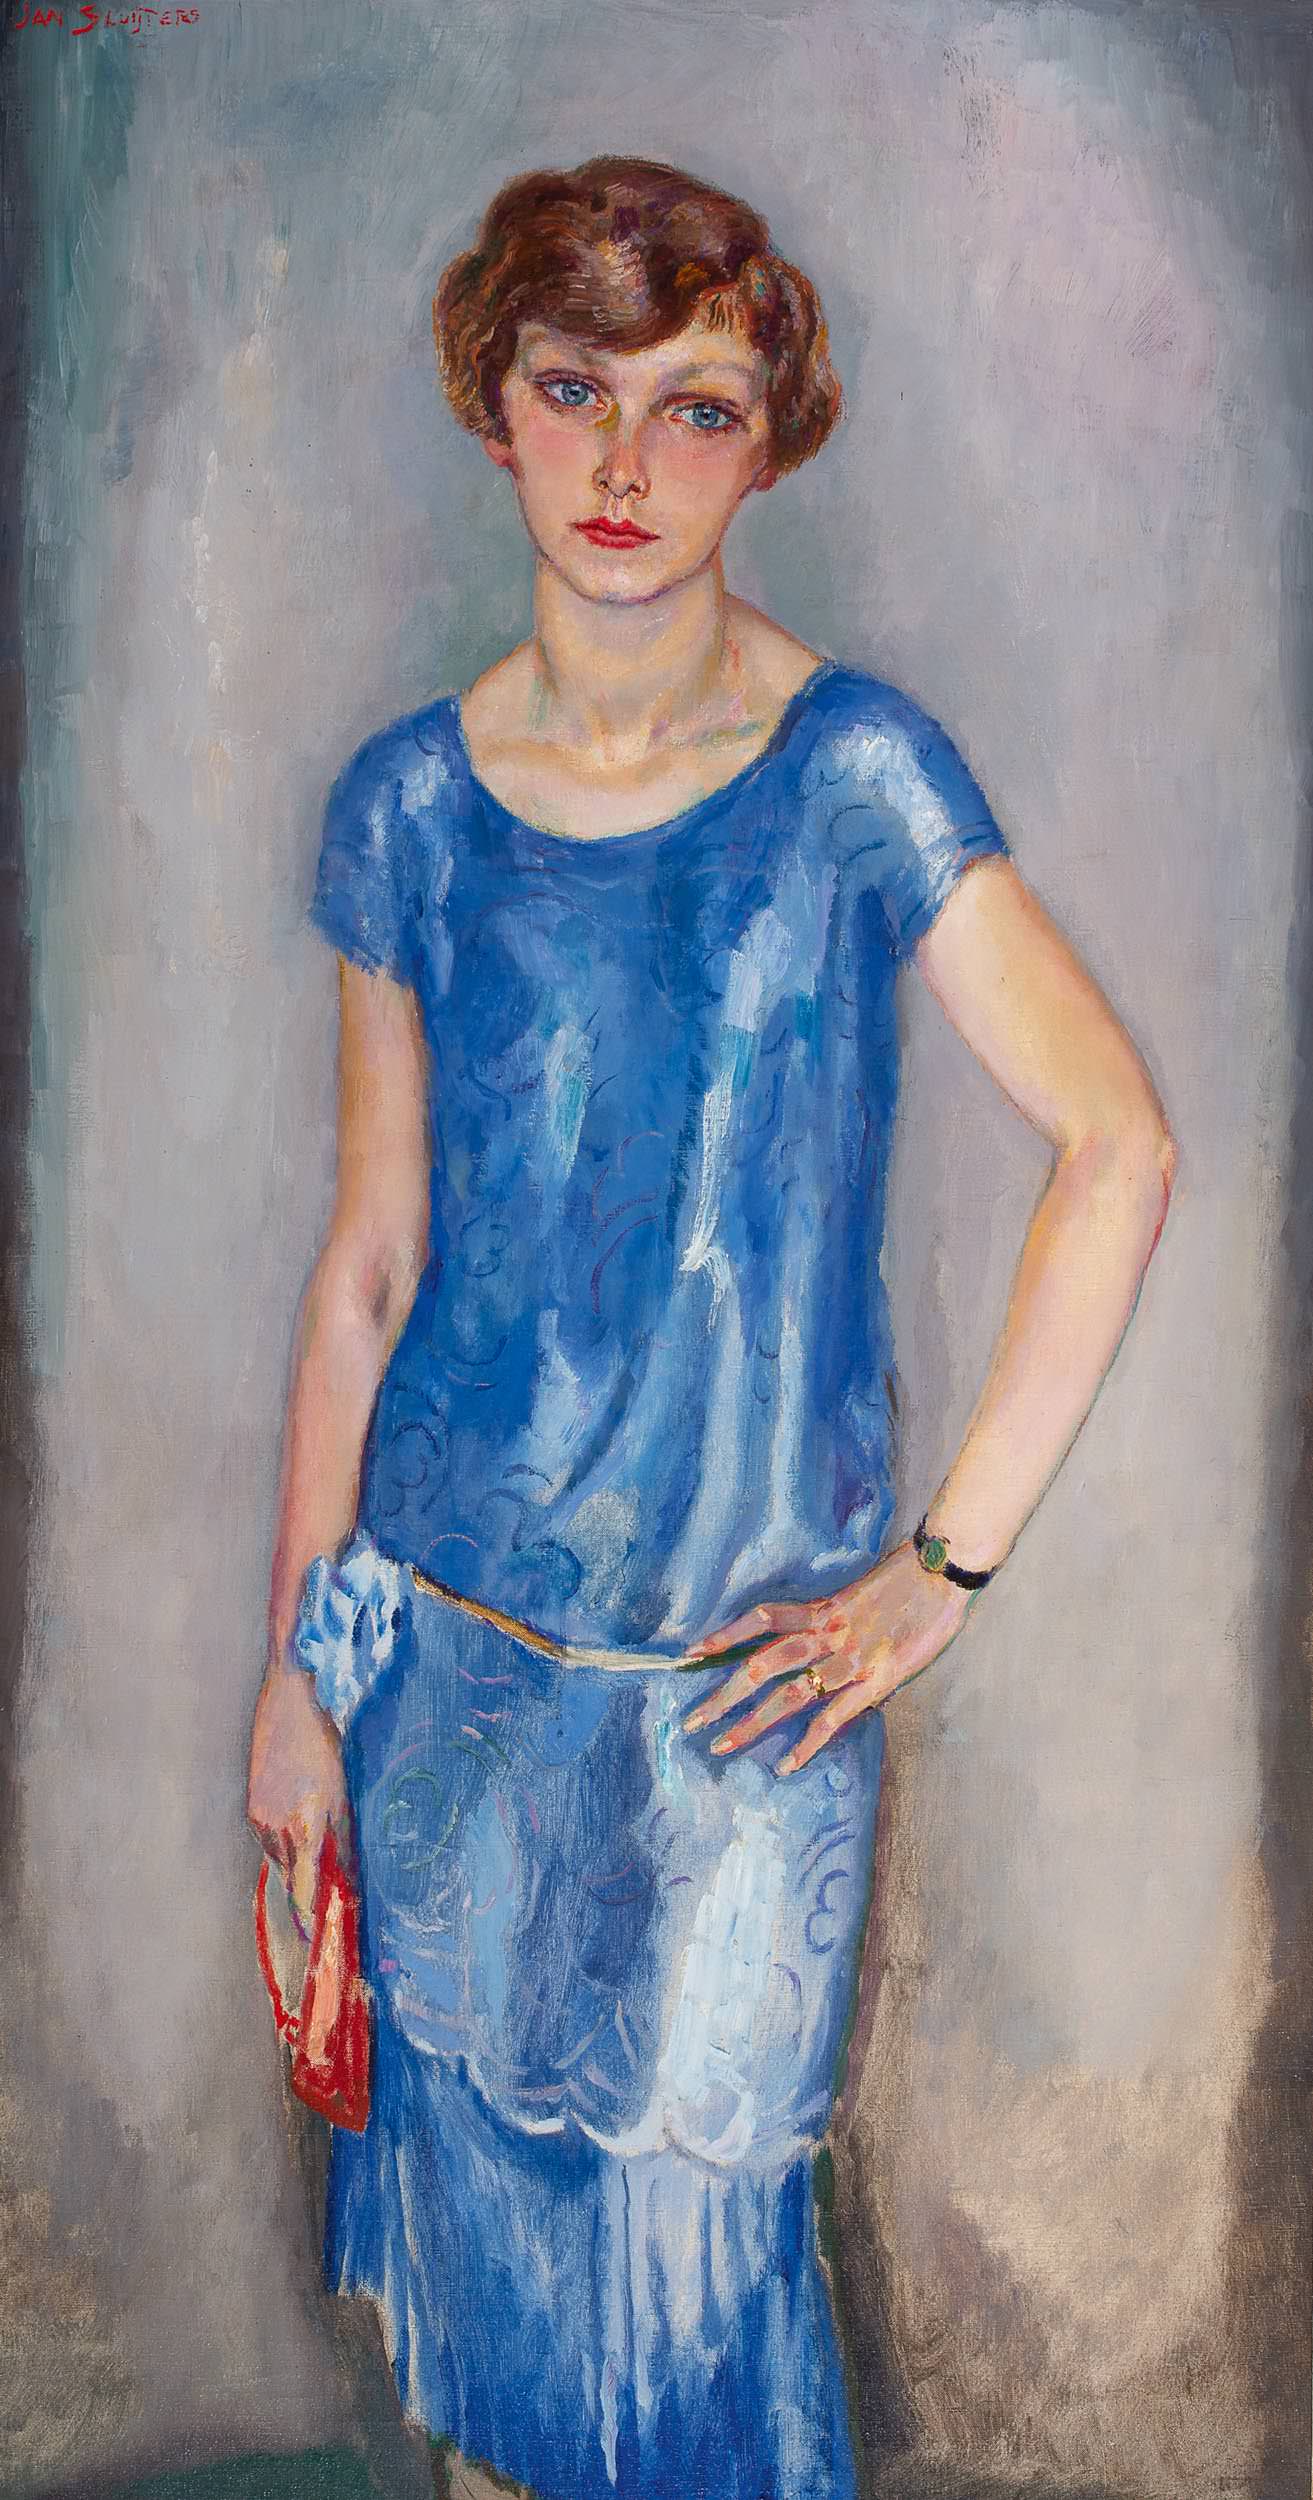 Lady in blue dress, 1928